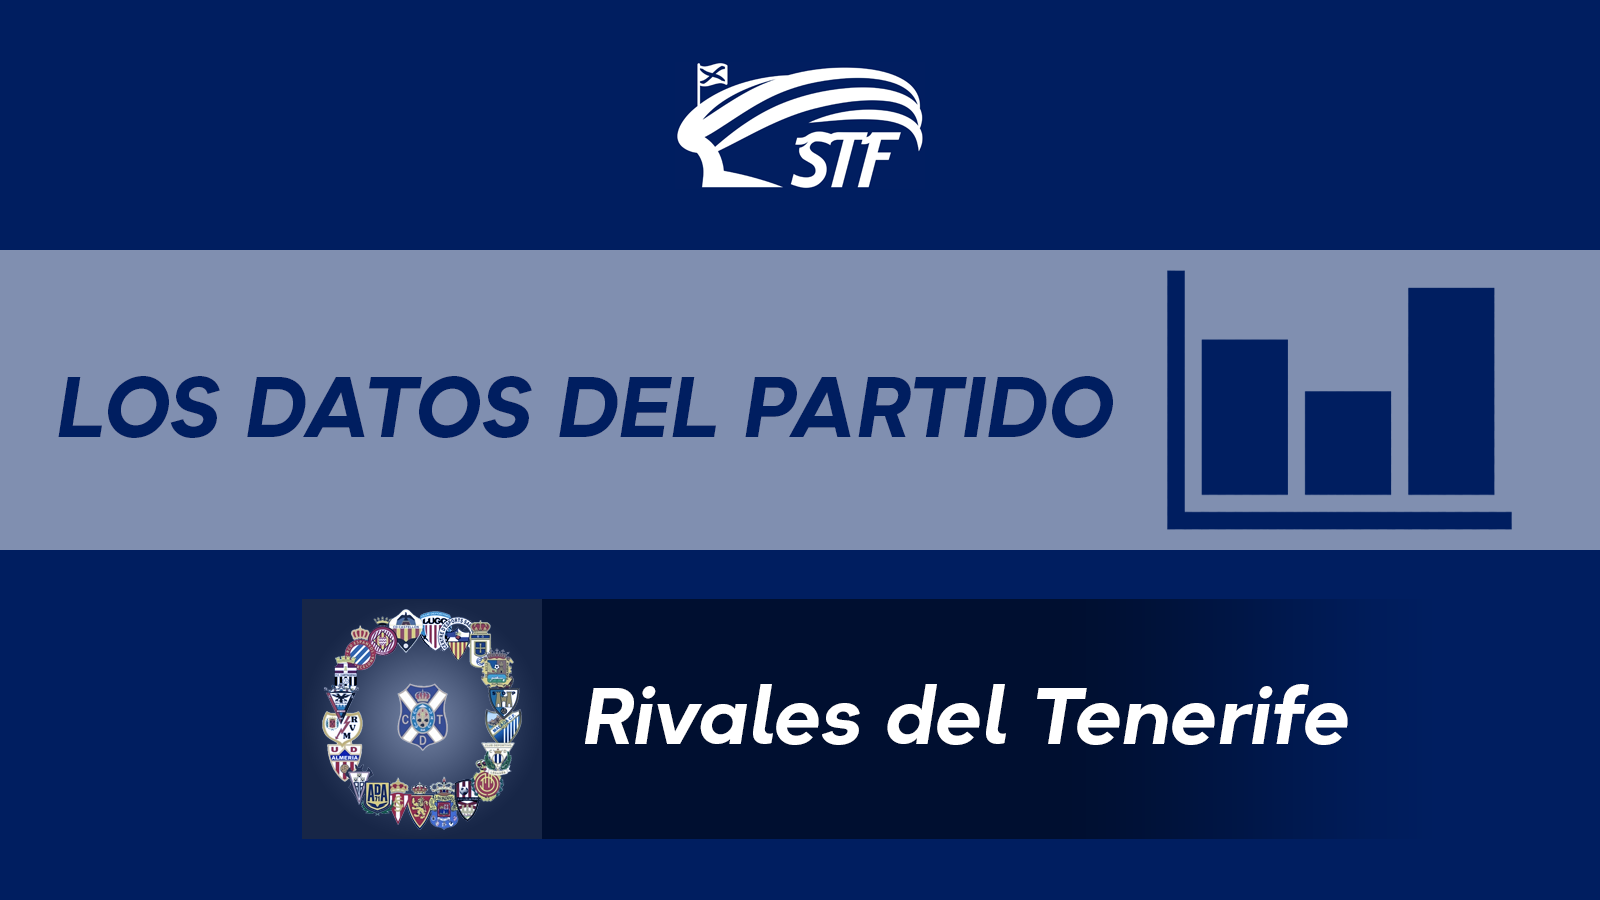 Los datos y curiosidades del Lugo 2-0 Tenerife